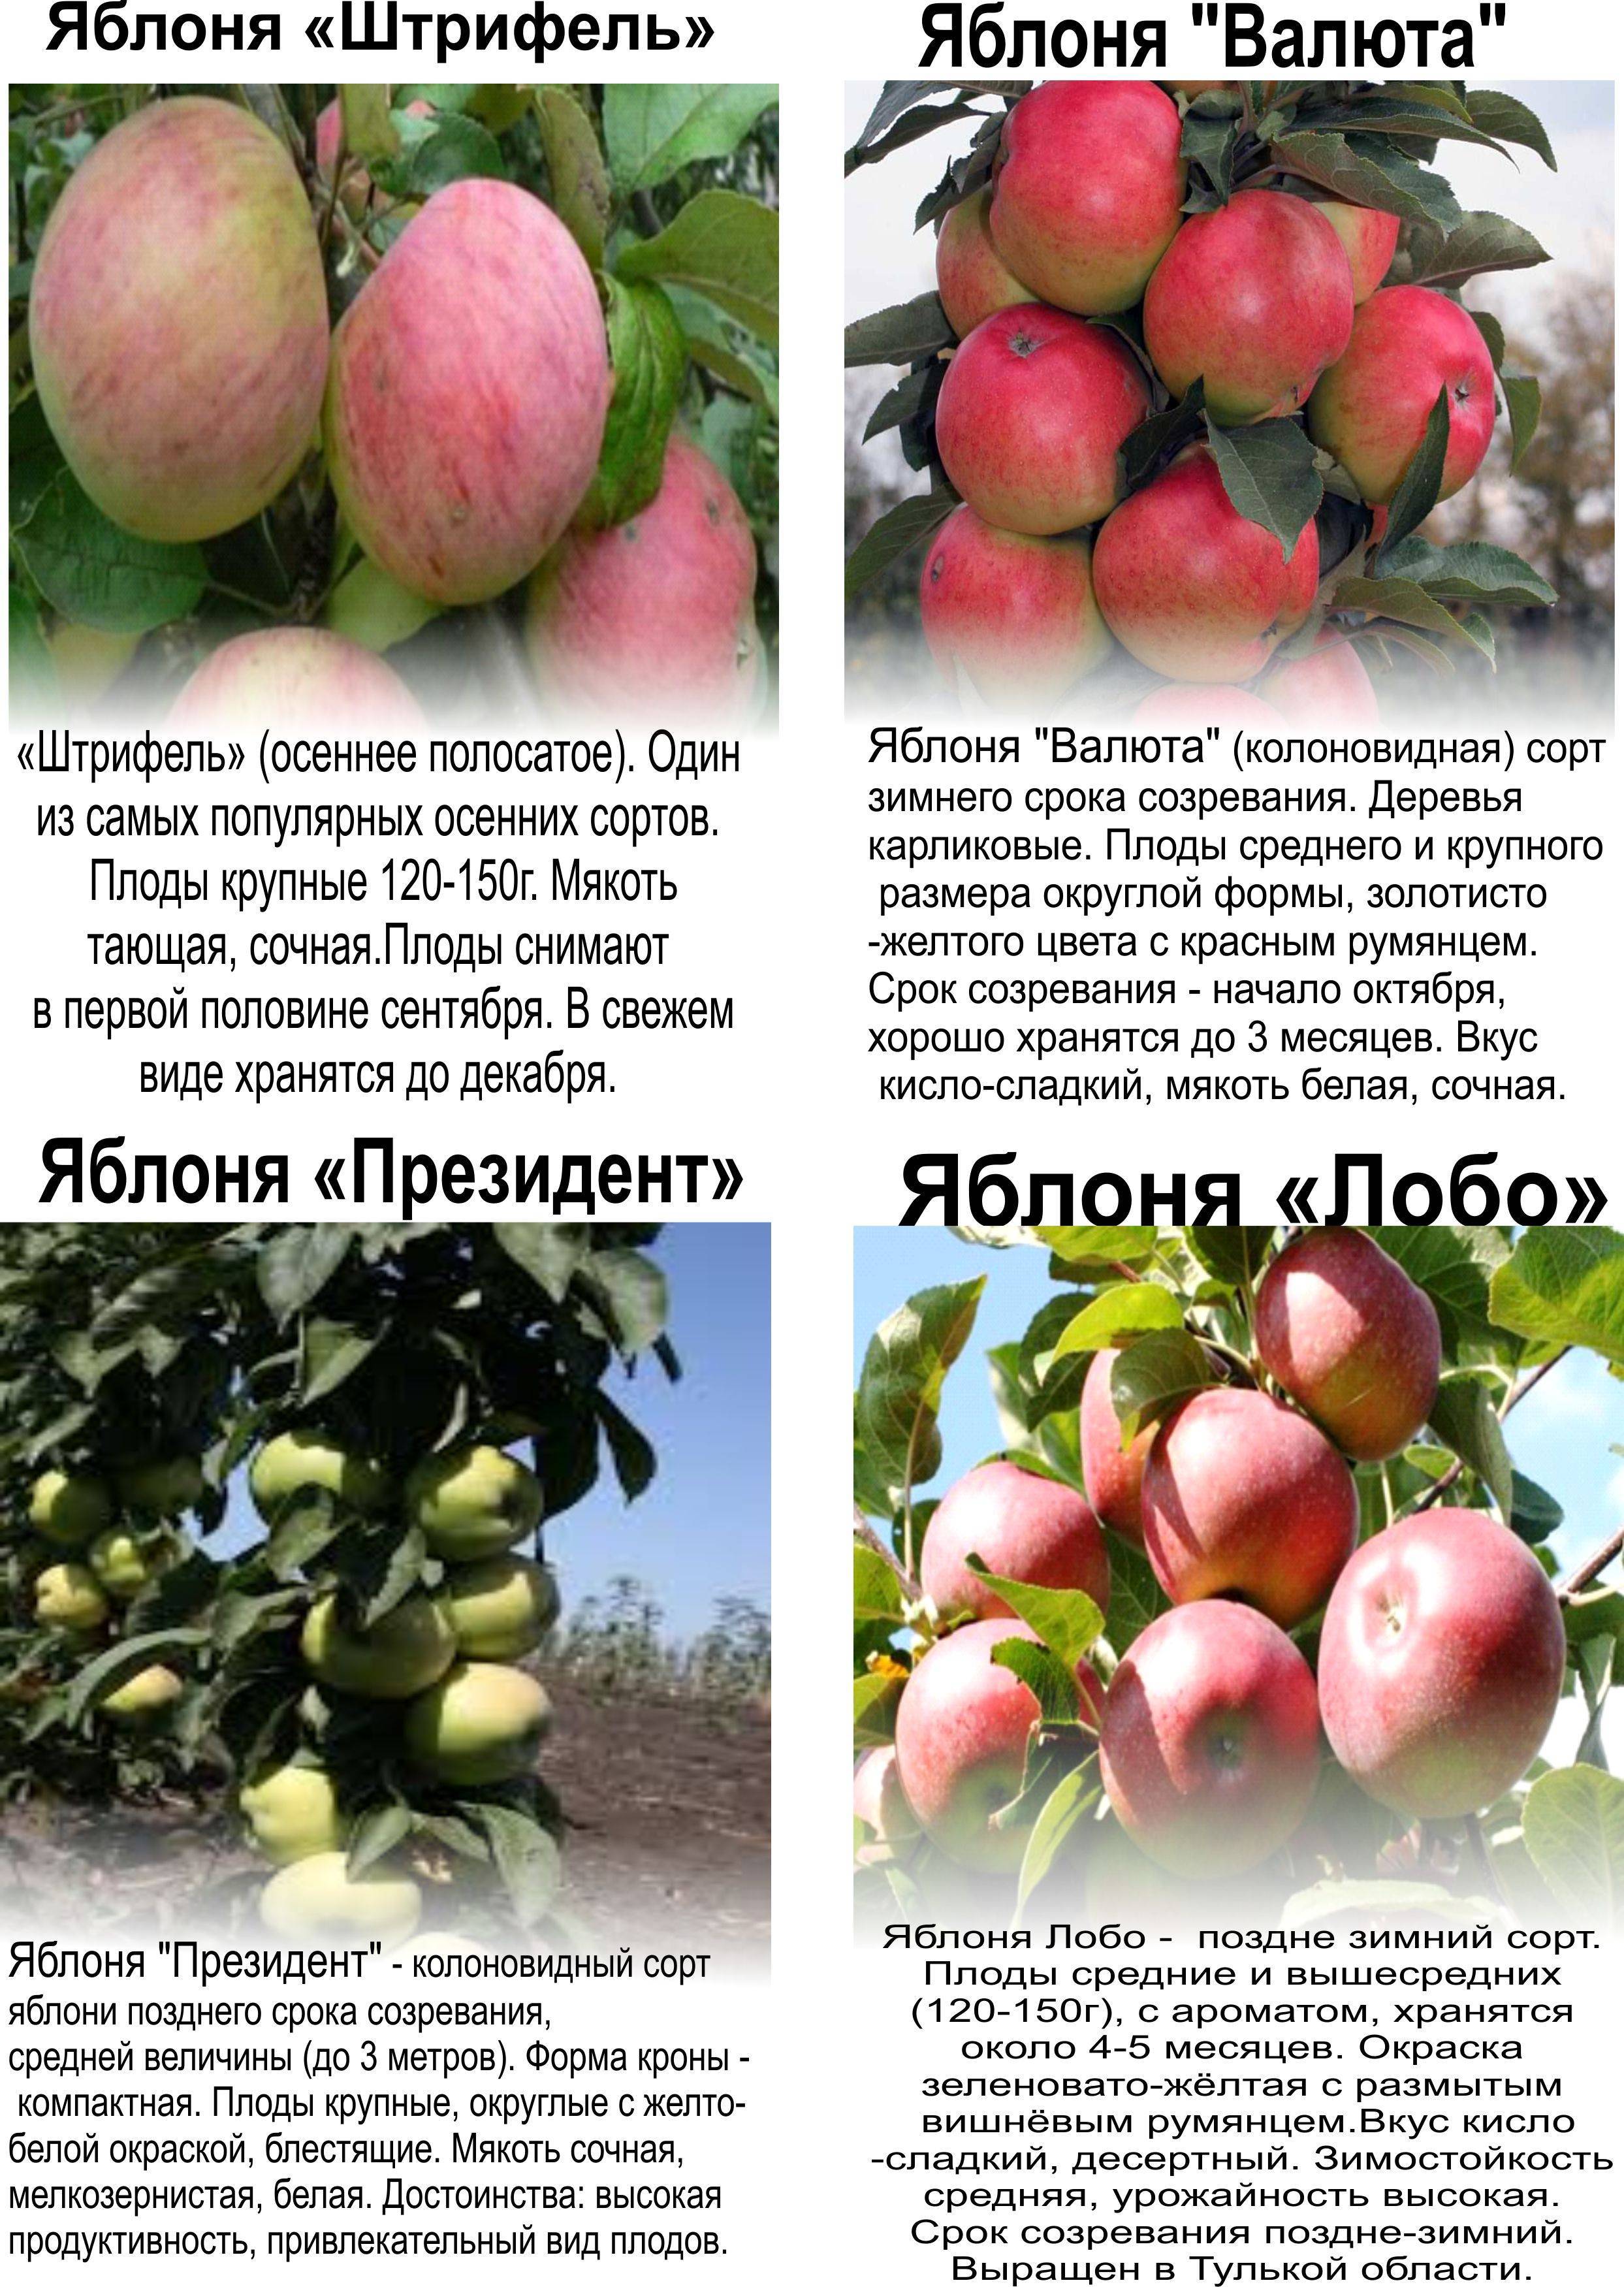 Сорт яблони московское ожерелье (колоновидная яблоня)